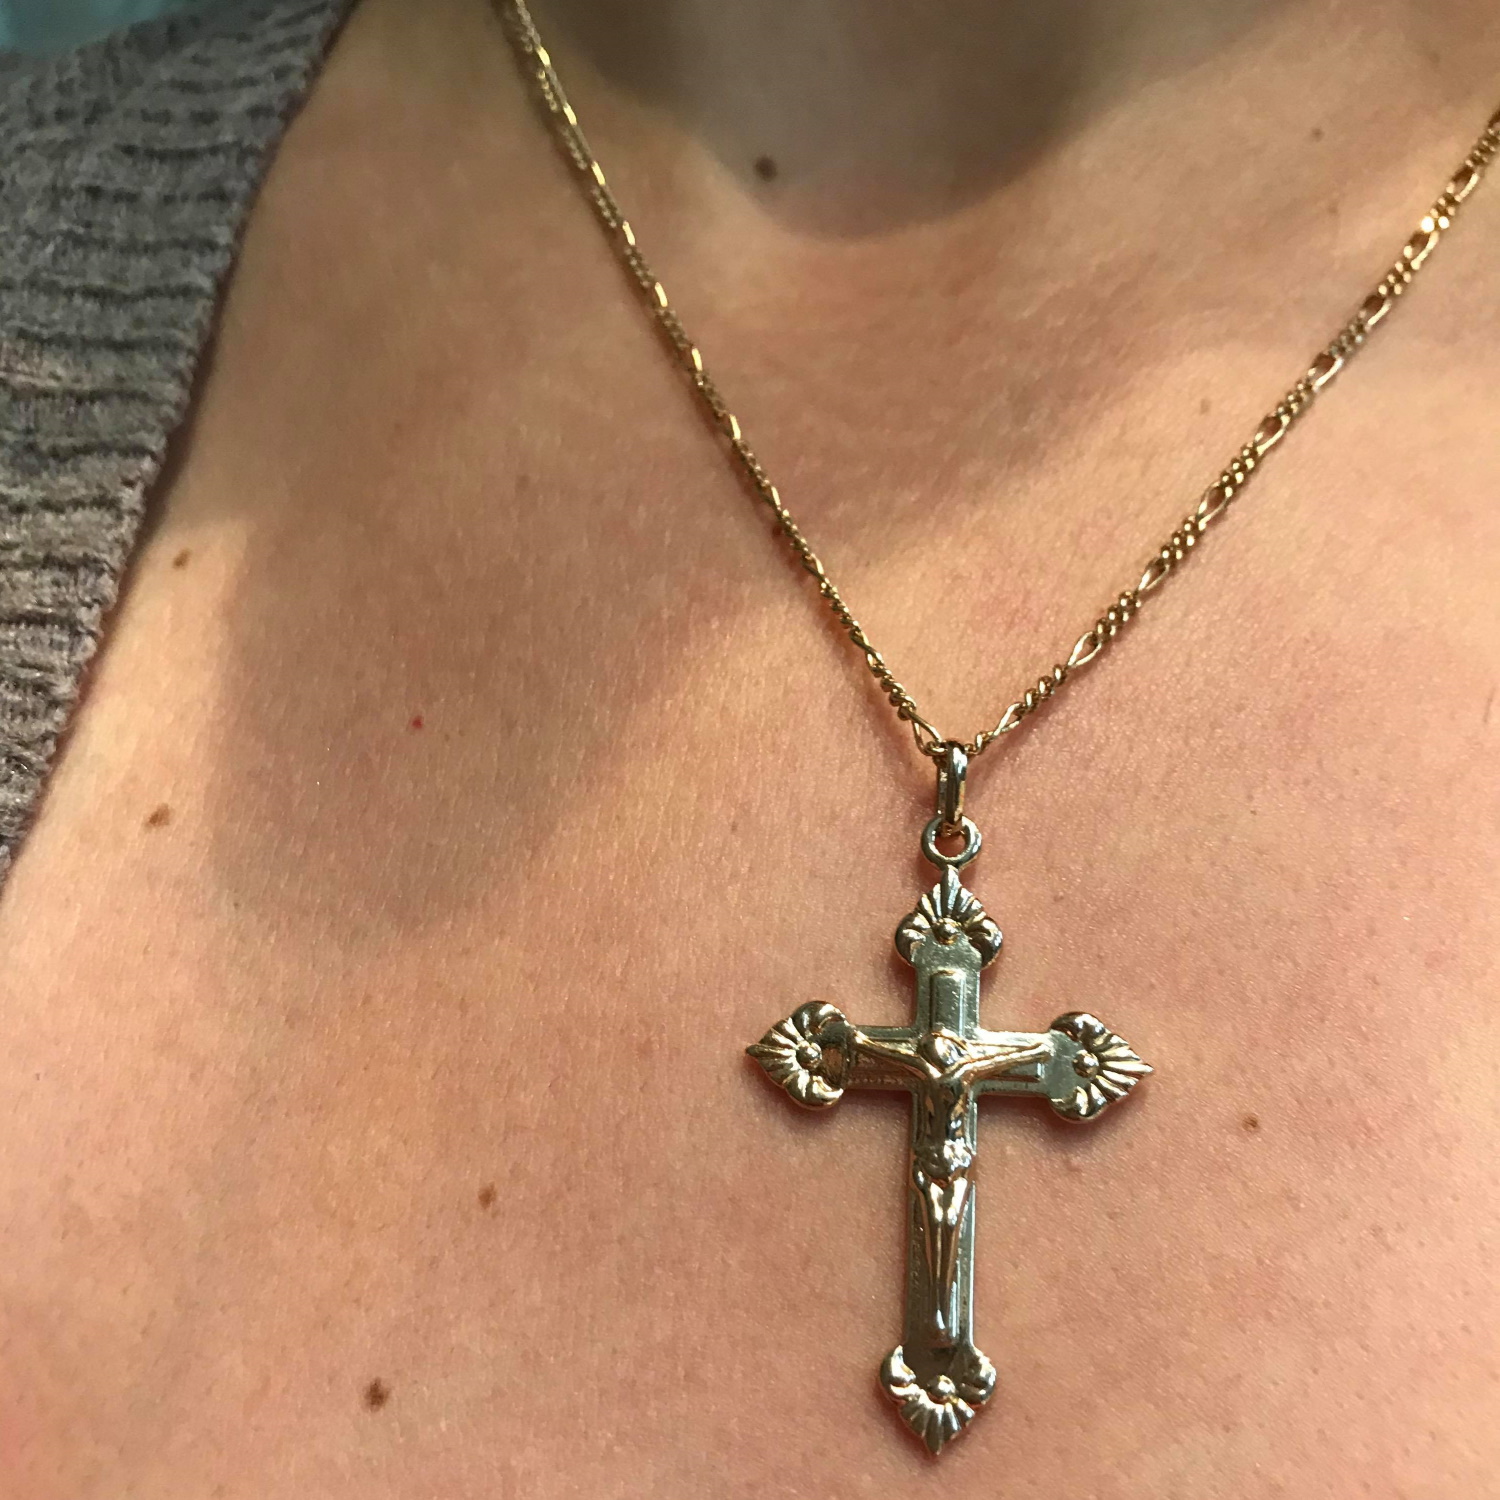 Pendentif crucifix croix avec Jésus en plaqué or. Croix  Adolescent Adulte Communion Femme Fille Garçon Indémodable Mixte Personnage Religion Symboles 